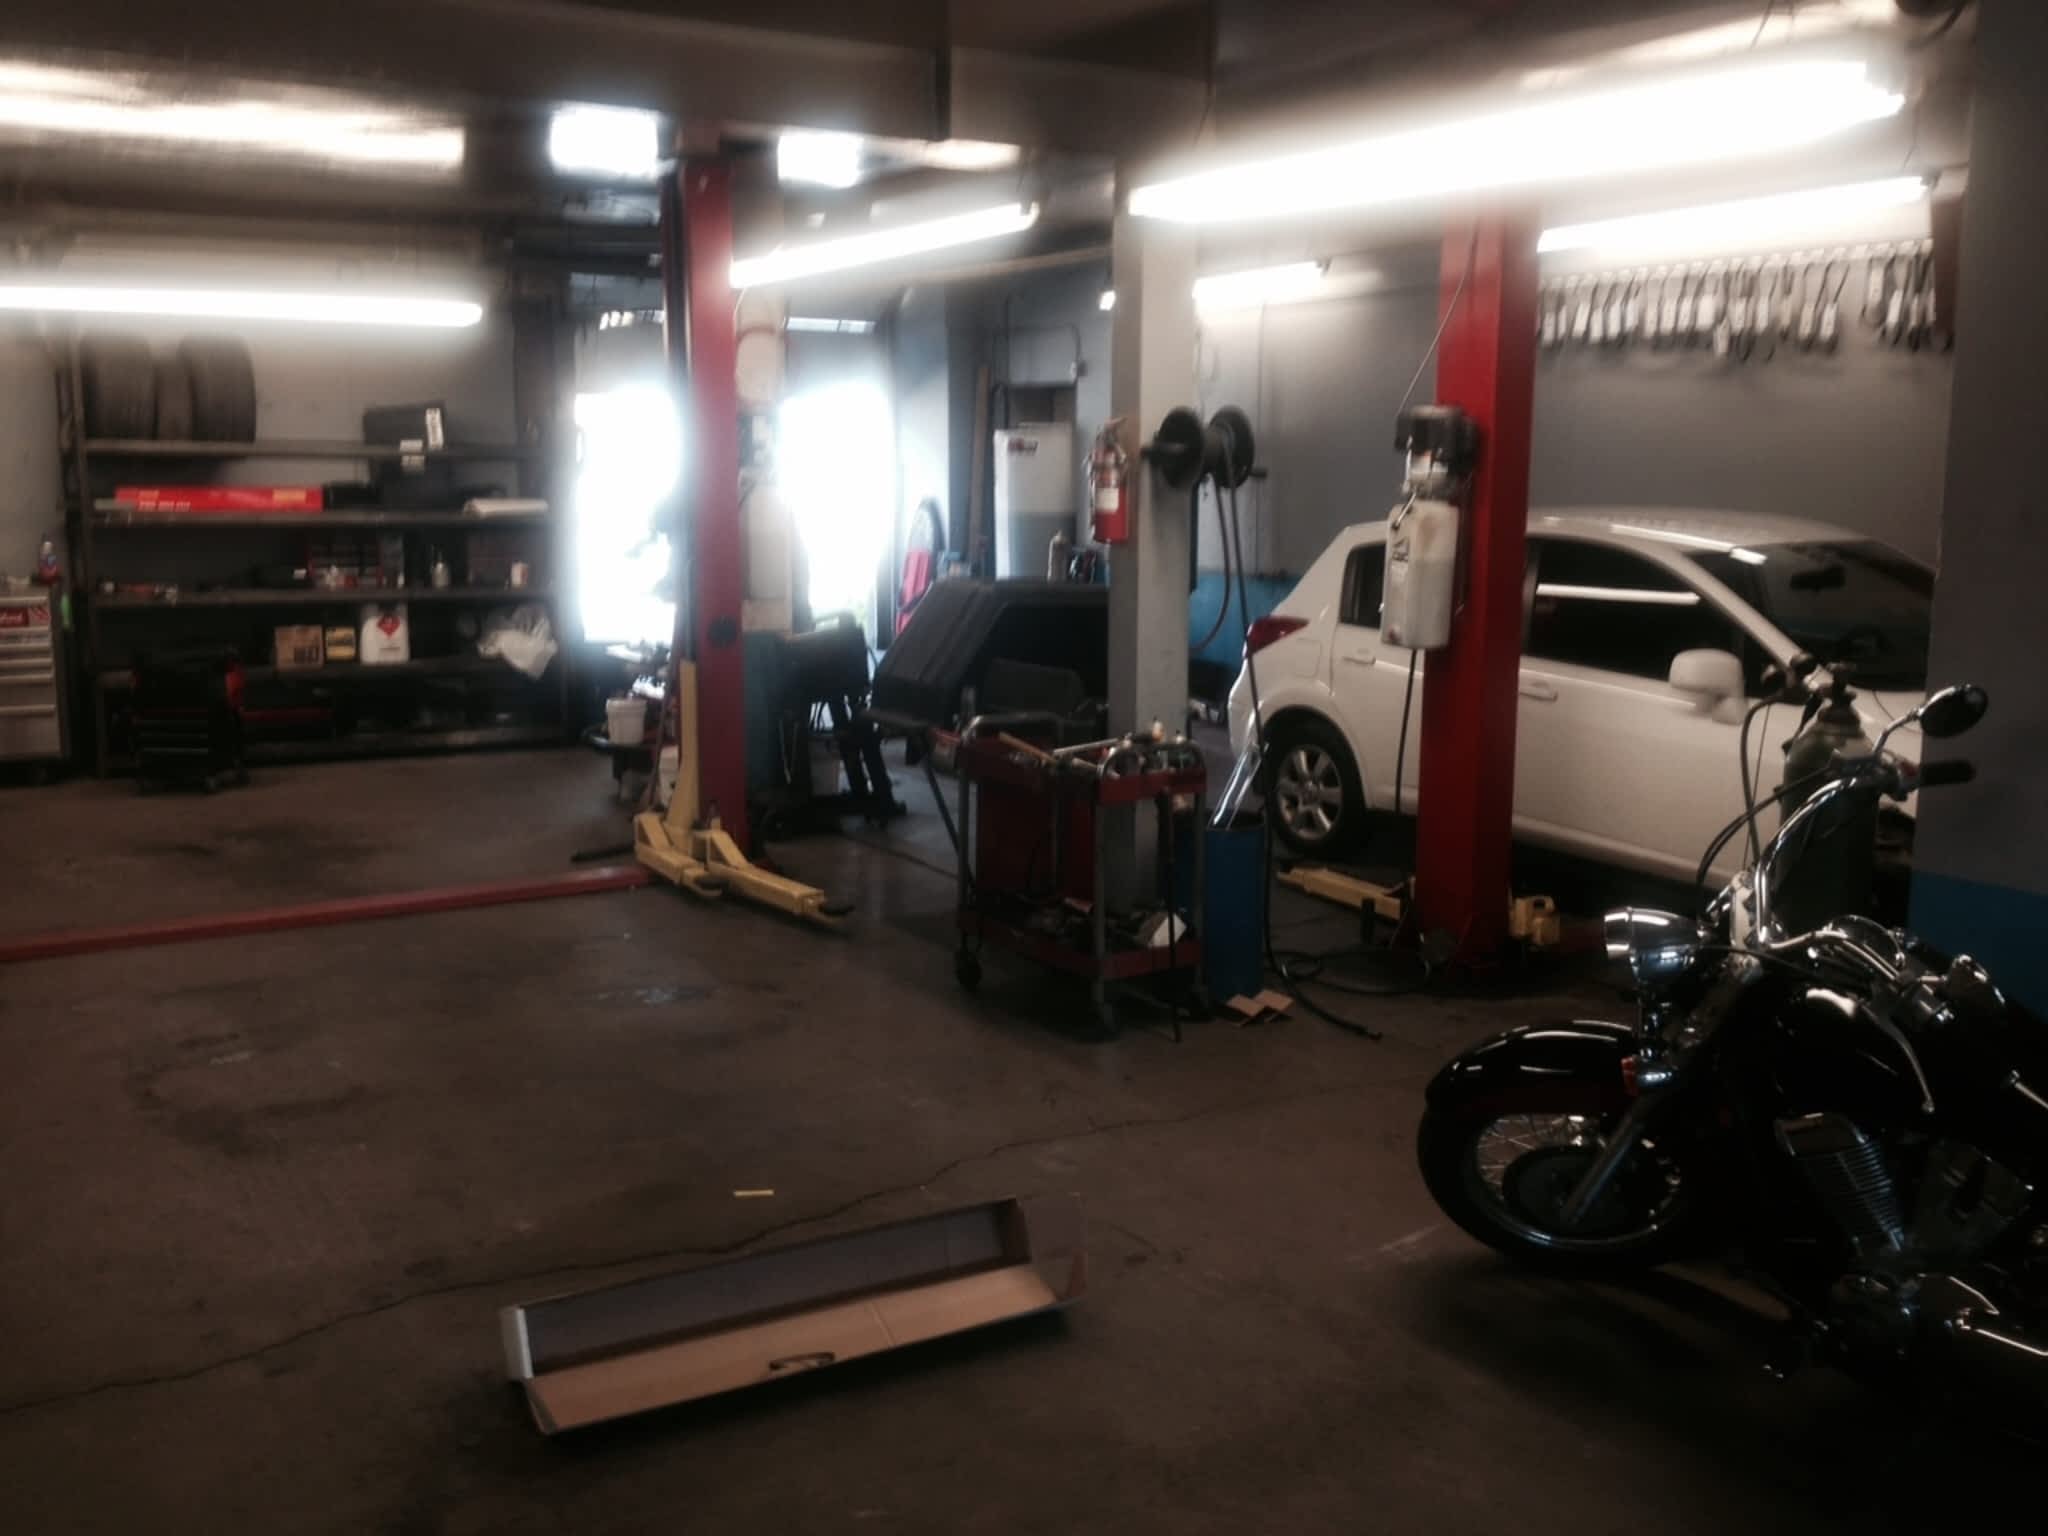 photo Durham Autocare - Auto Repairs & Detailing